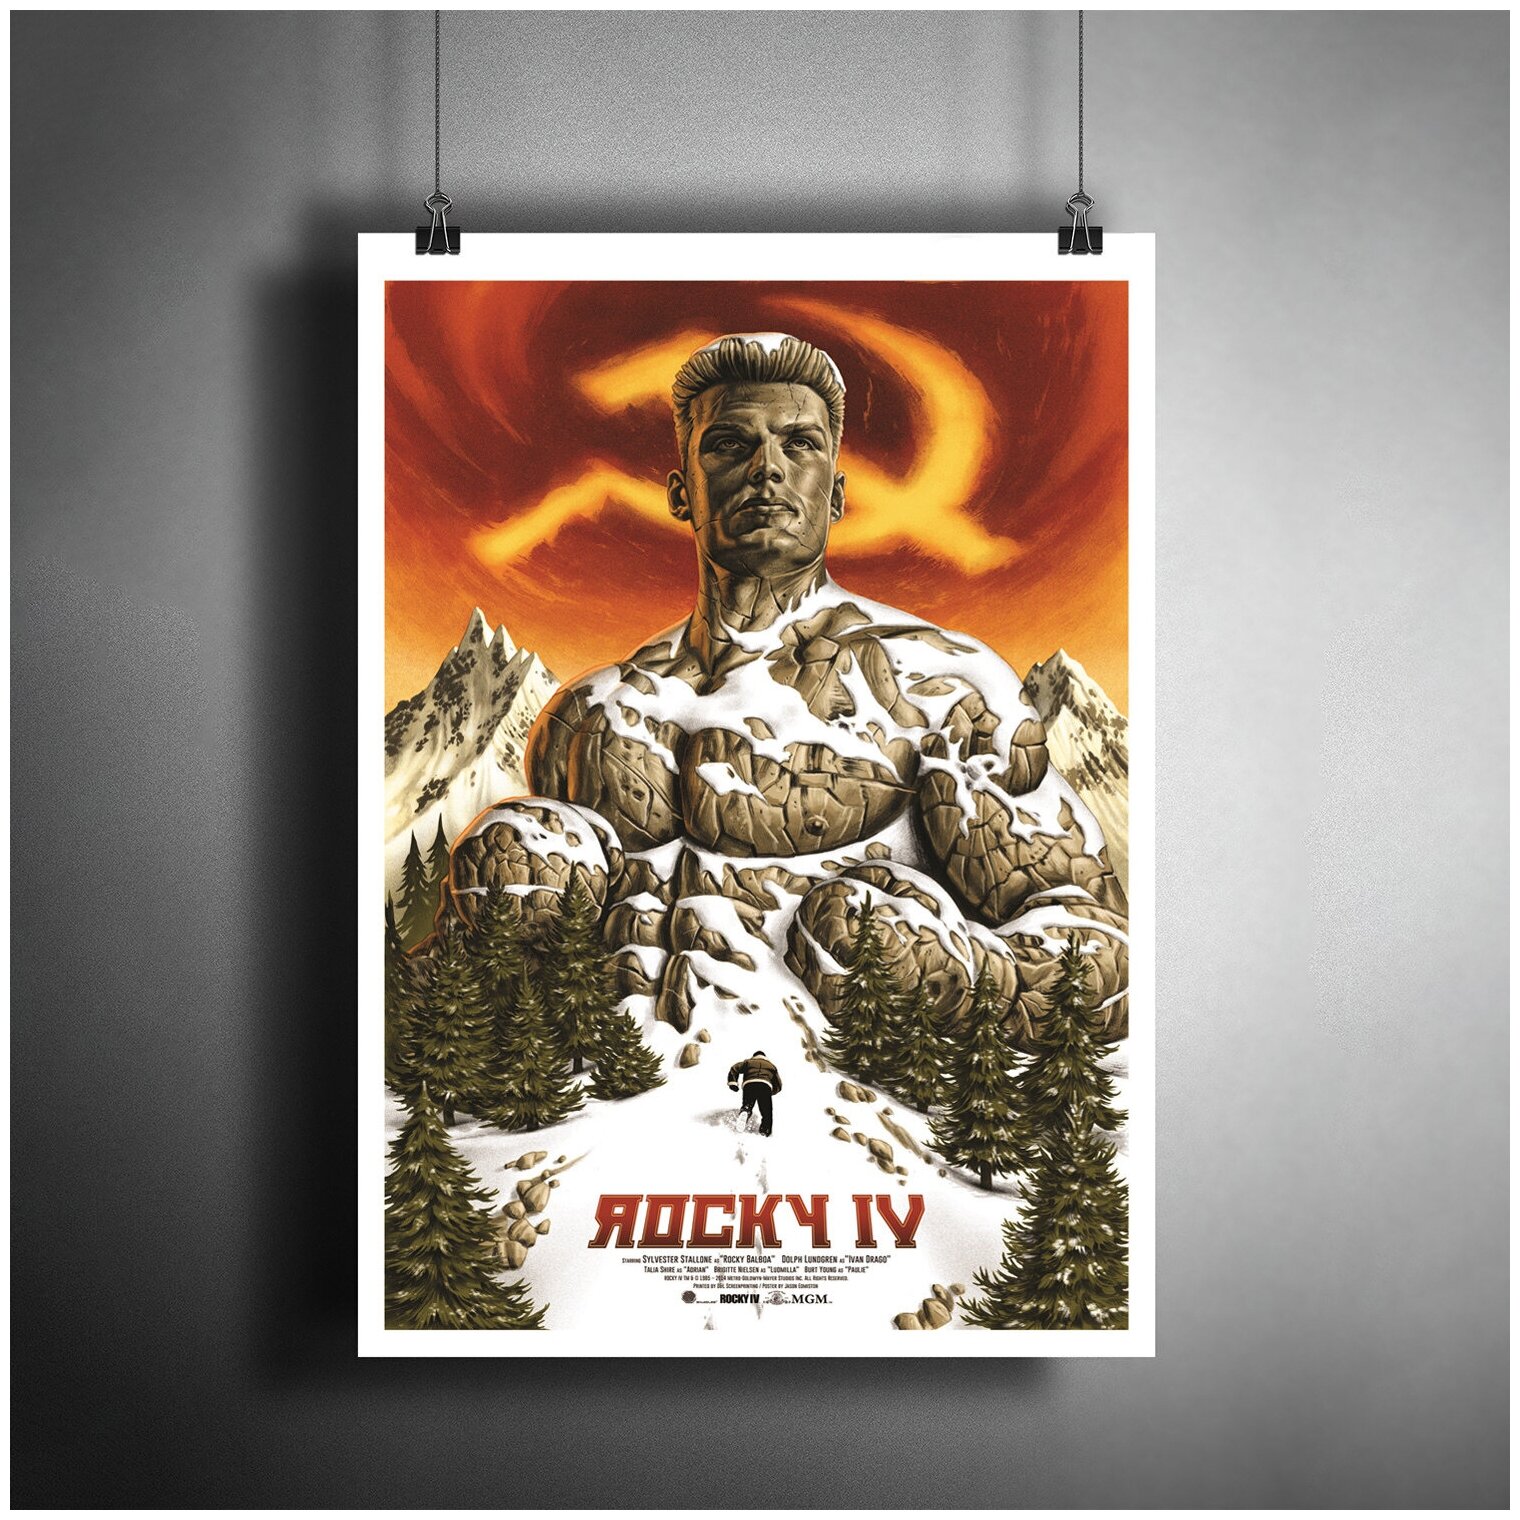 Постер плакат для интерьера "Фильм: Рокки 4. Сильвестр Сталлоне. Rocky IV"/ Декор дома, офиса, комнаты A3 (297 x 420 мм)